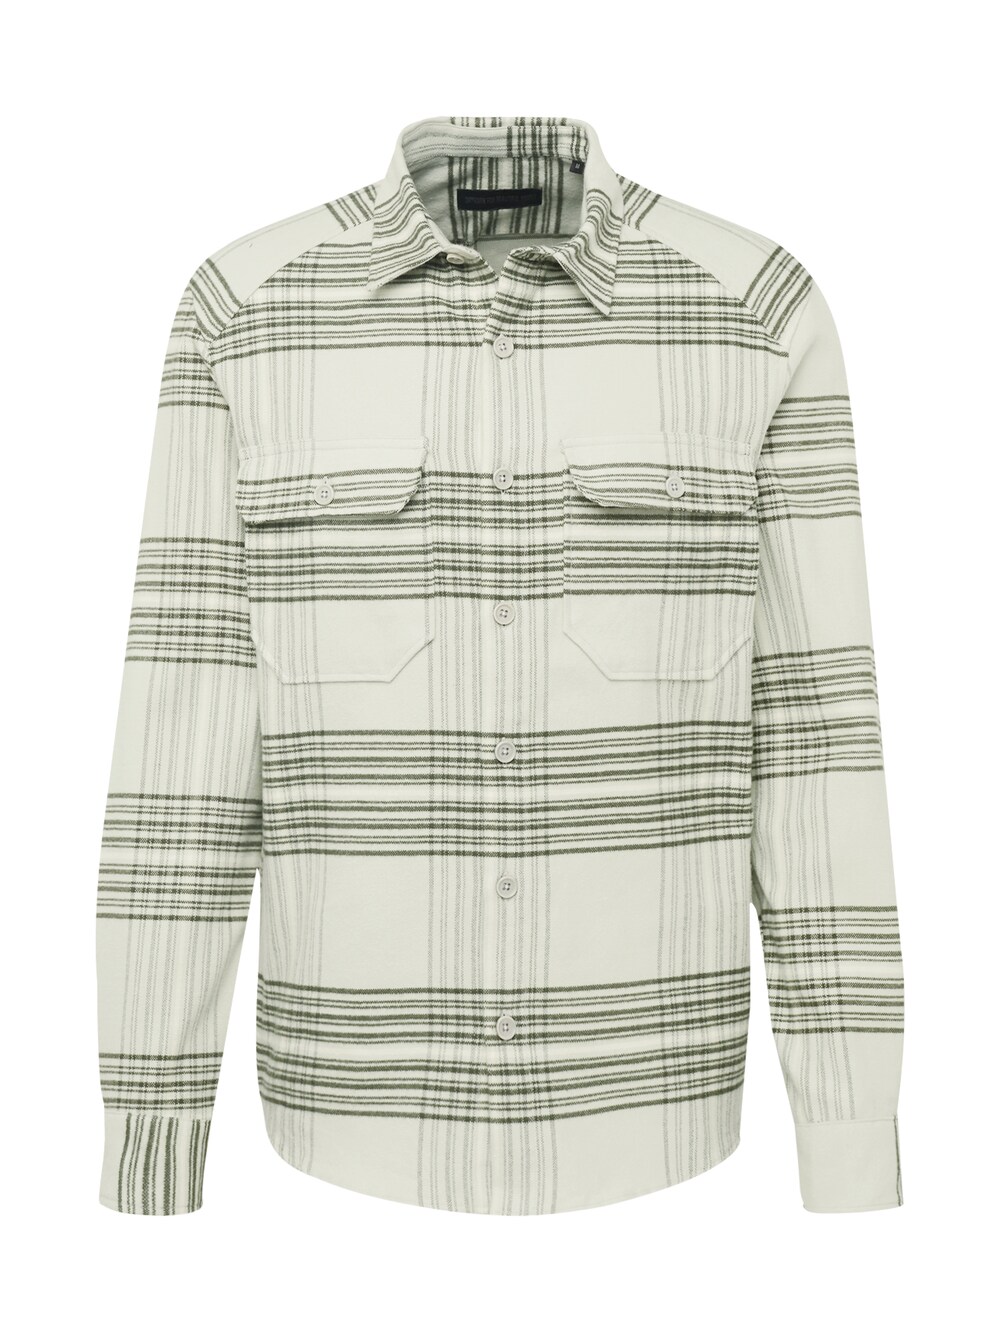 Рубашка на пуговицах стандартного кроя Drykorn, пастельно-зеленый/темно-зеленый